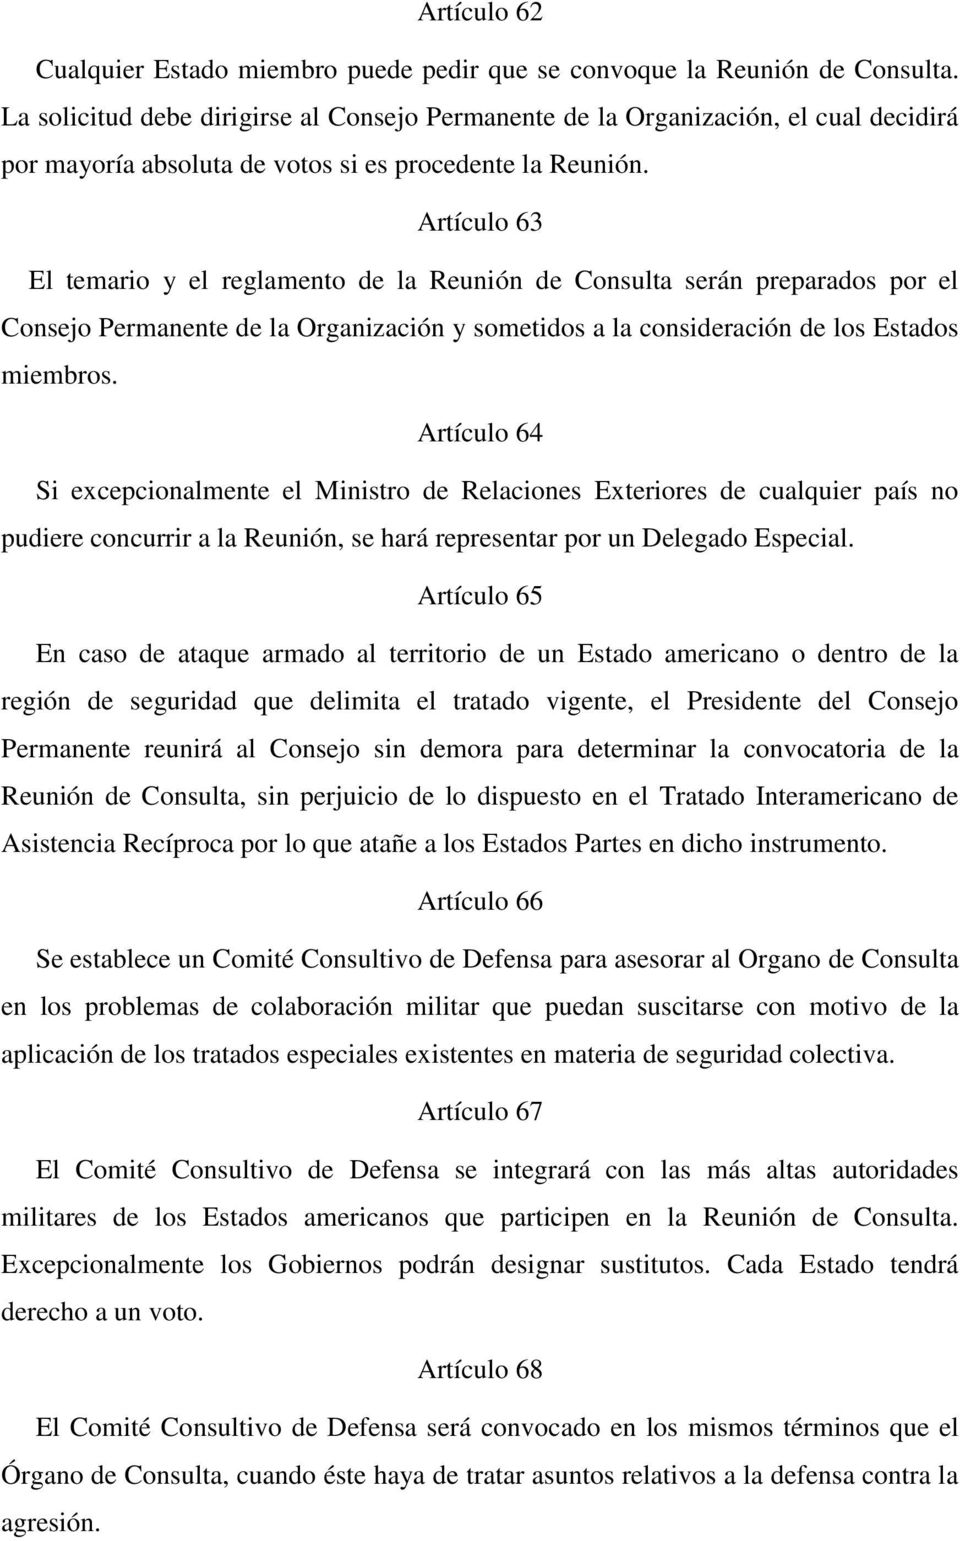 Artículo 63 El temario y el reglamento de la Reunión de Consulta serán preparados por el Consejo Permanente de la Organización y sometidos a la consideración de los Estados miembros.